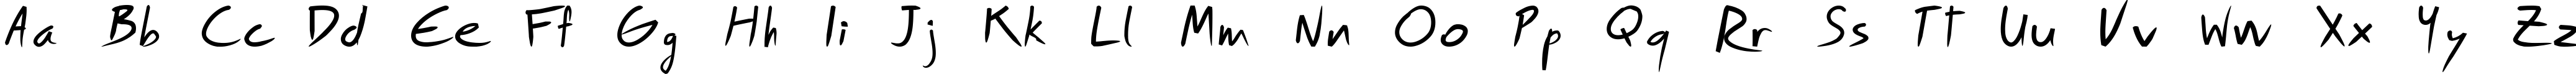 Пример написания английского алфавита шрифтом Royfont